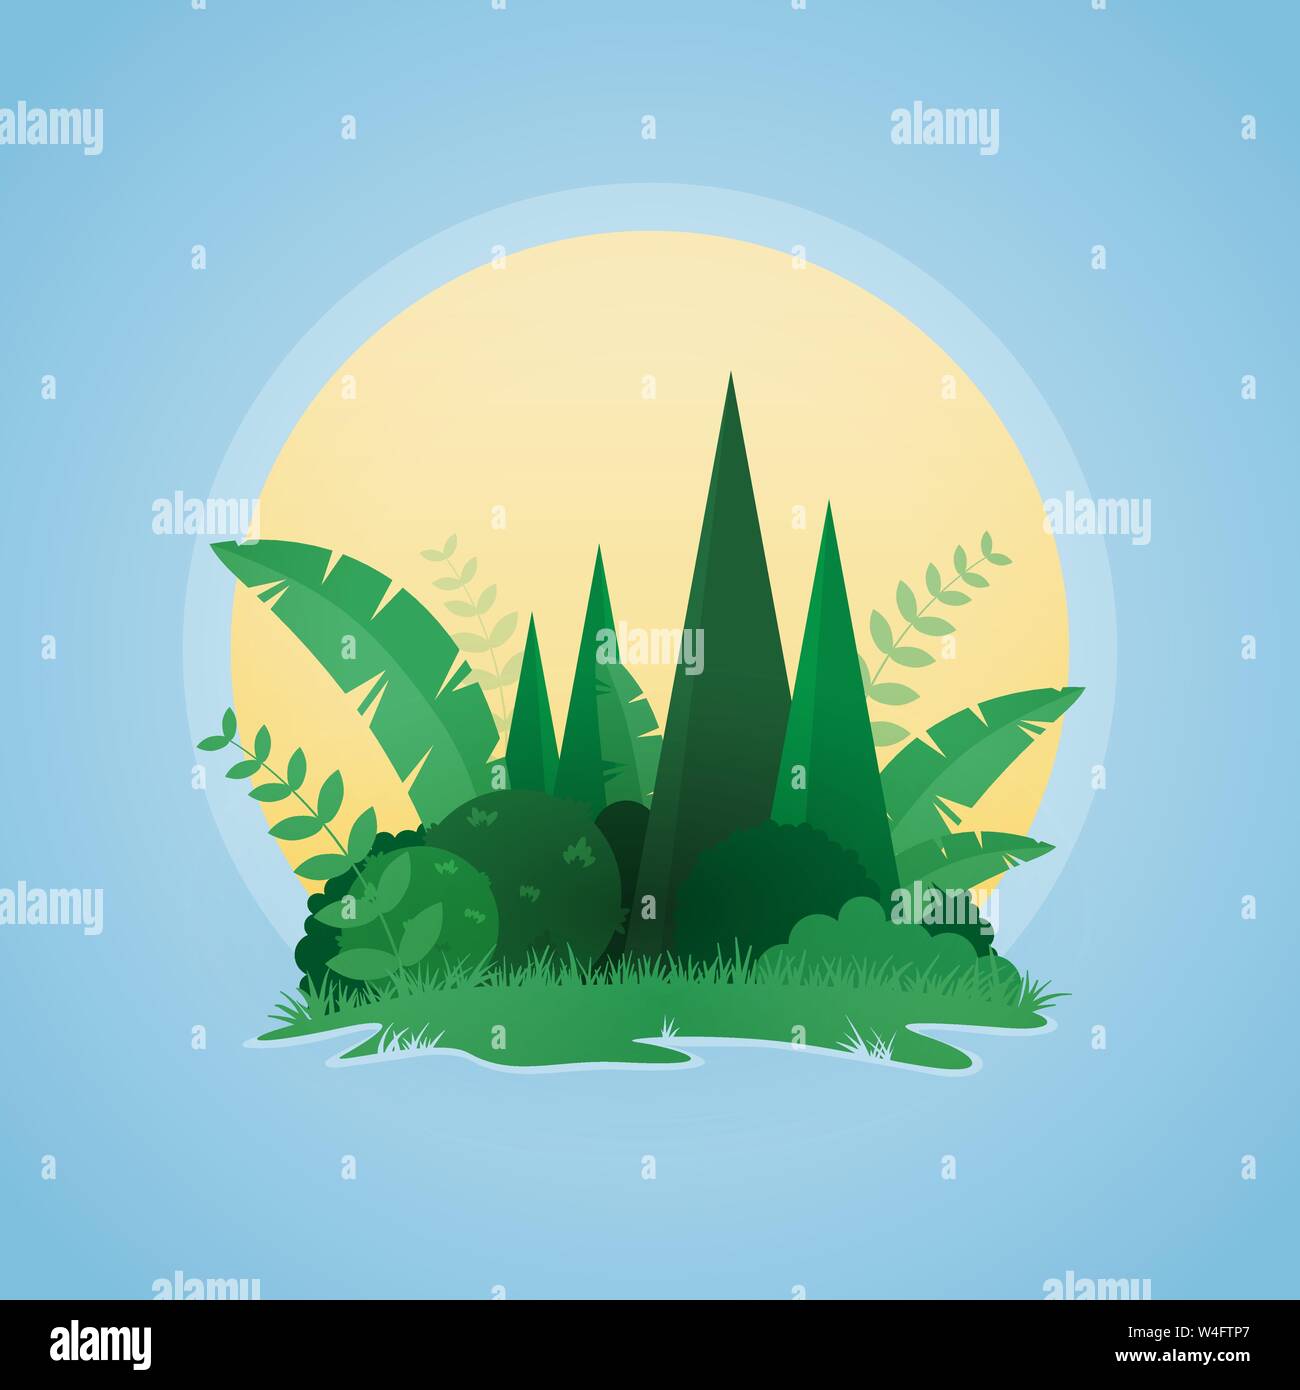 Illustrazione Vettoriale di foresta pluviale tropicale paesaggio piante e alberi tropicali. Il design del vettore di tropicale piccola isola tramonto paesaggio. Illustrazione Vettoriale